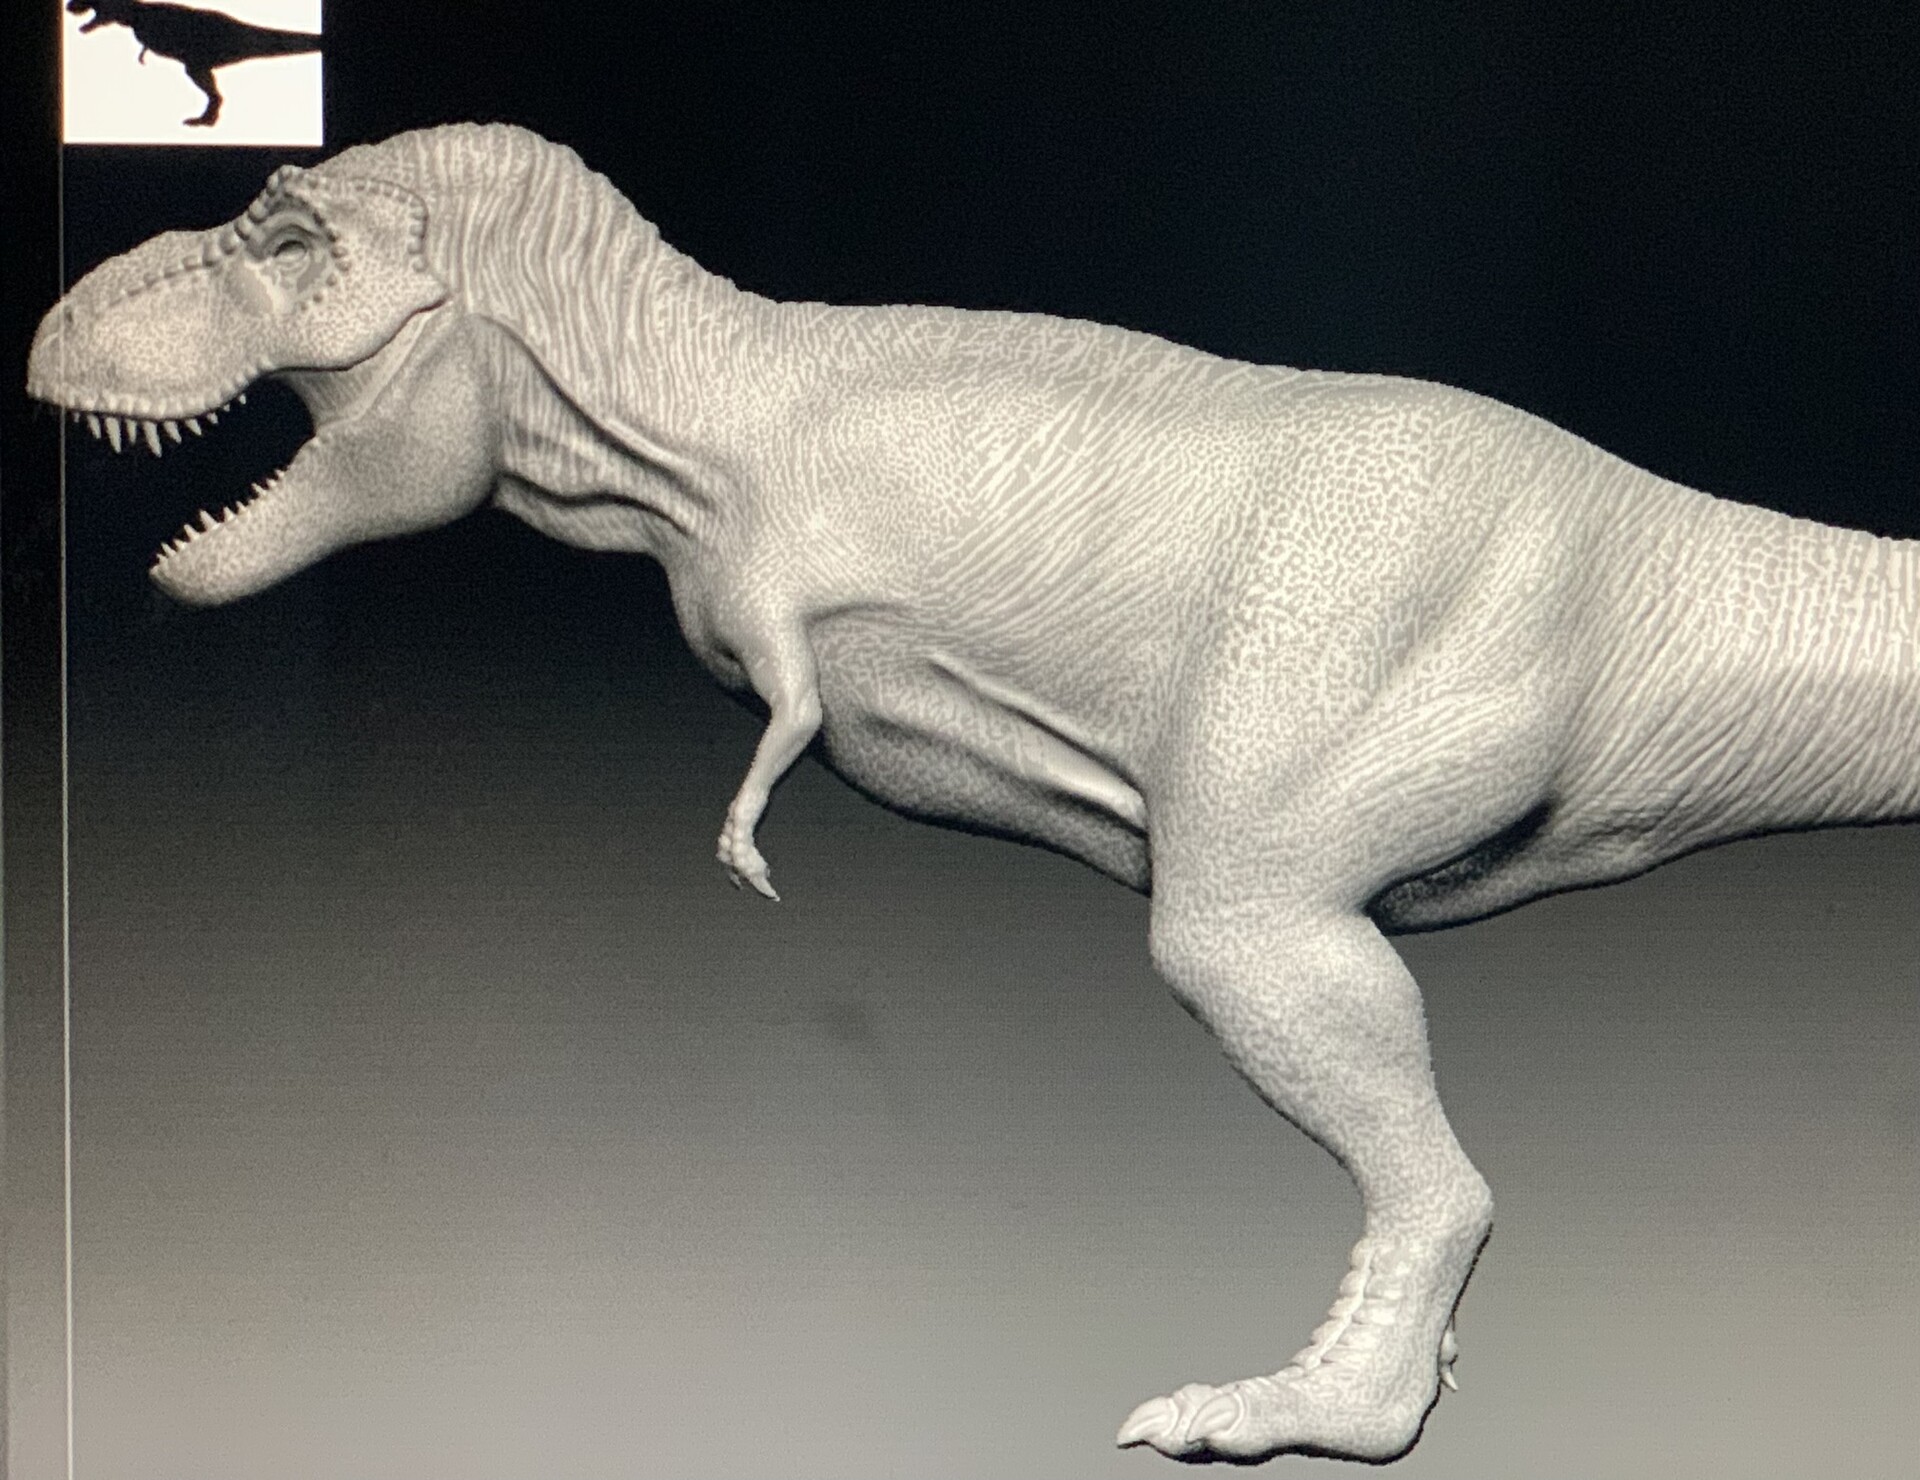 ArtStation - Jurassic park T-rex animation